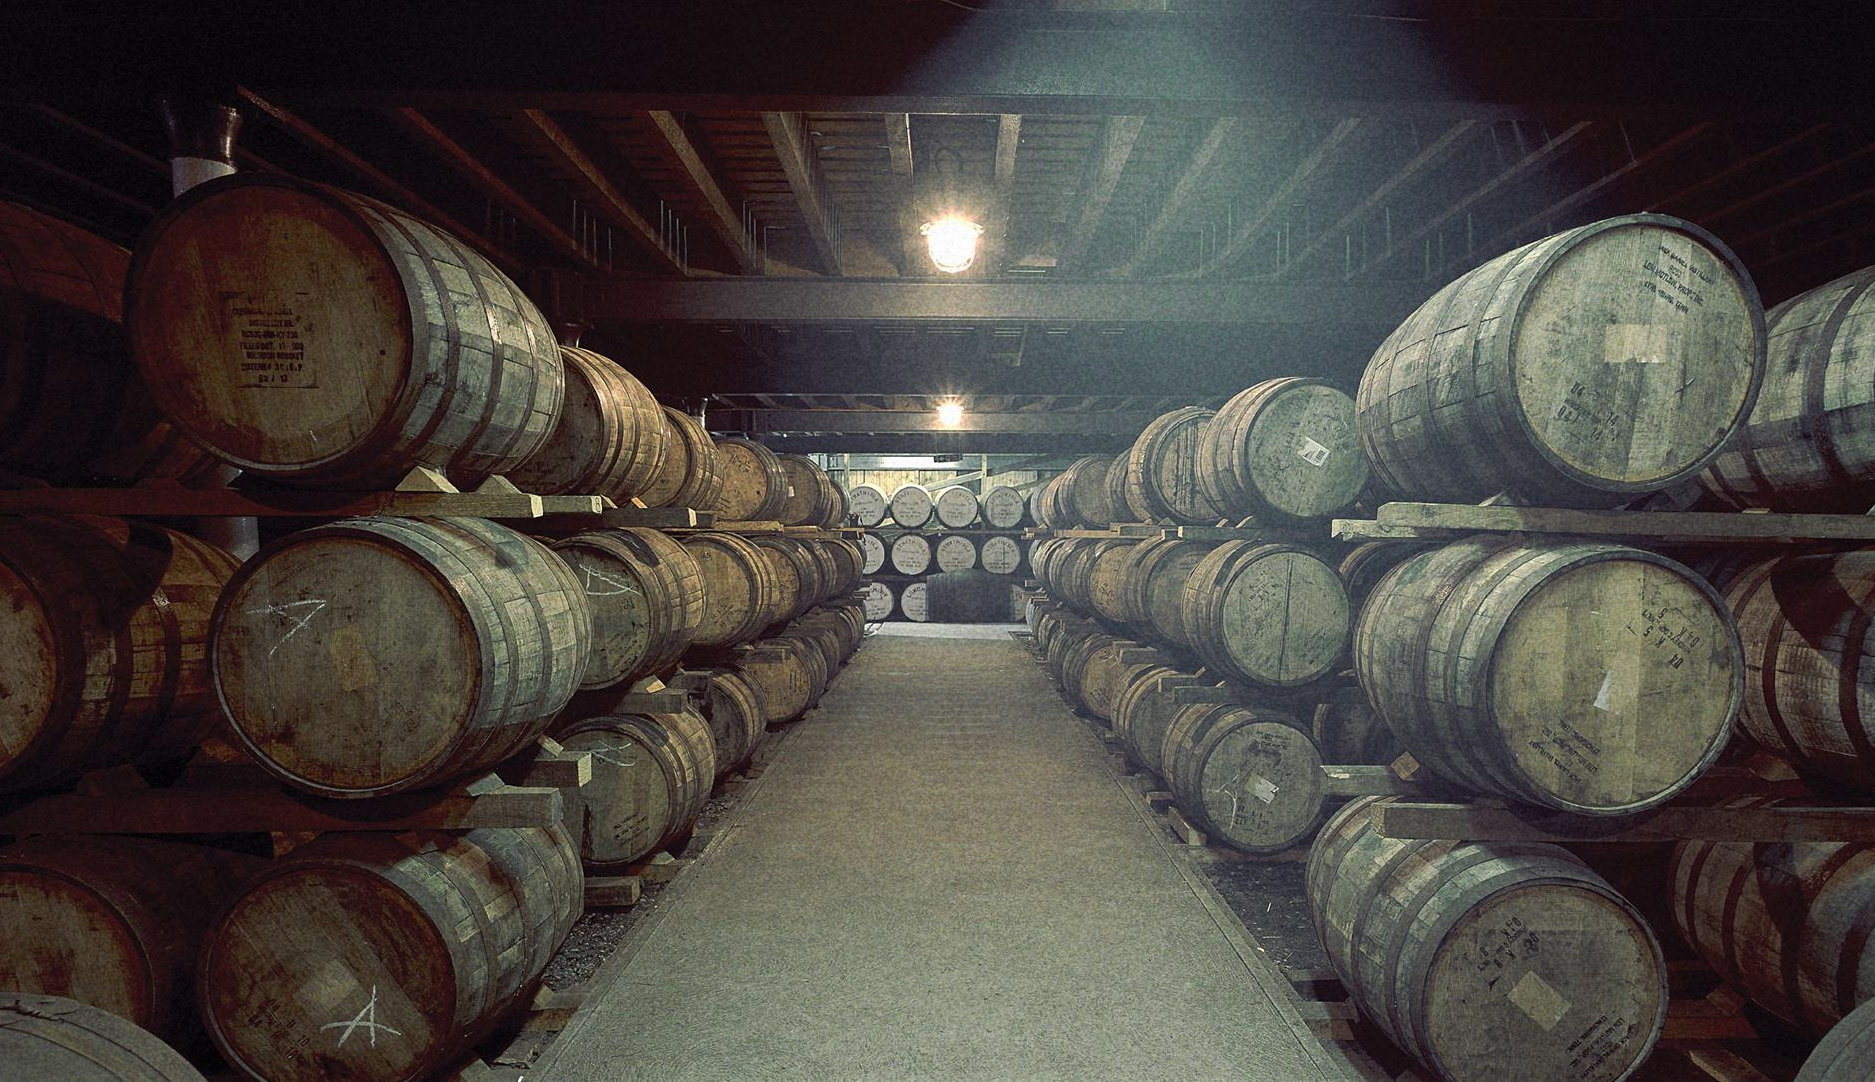 Πόσα σκαμπάζεις από την παραγωγή του Whisky;